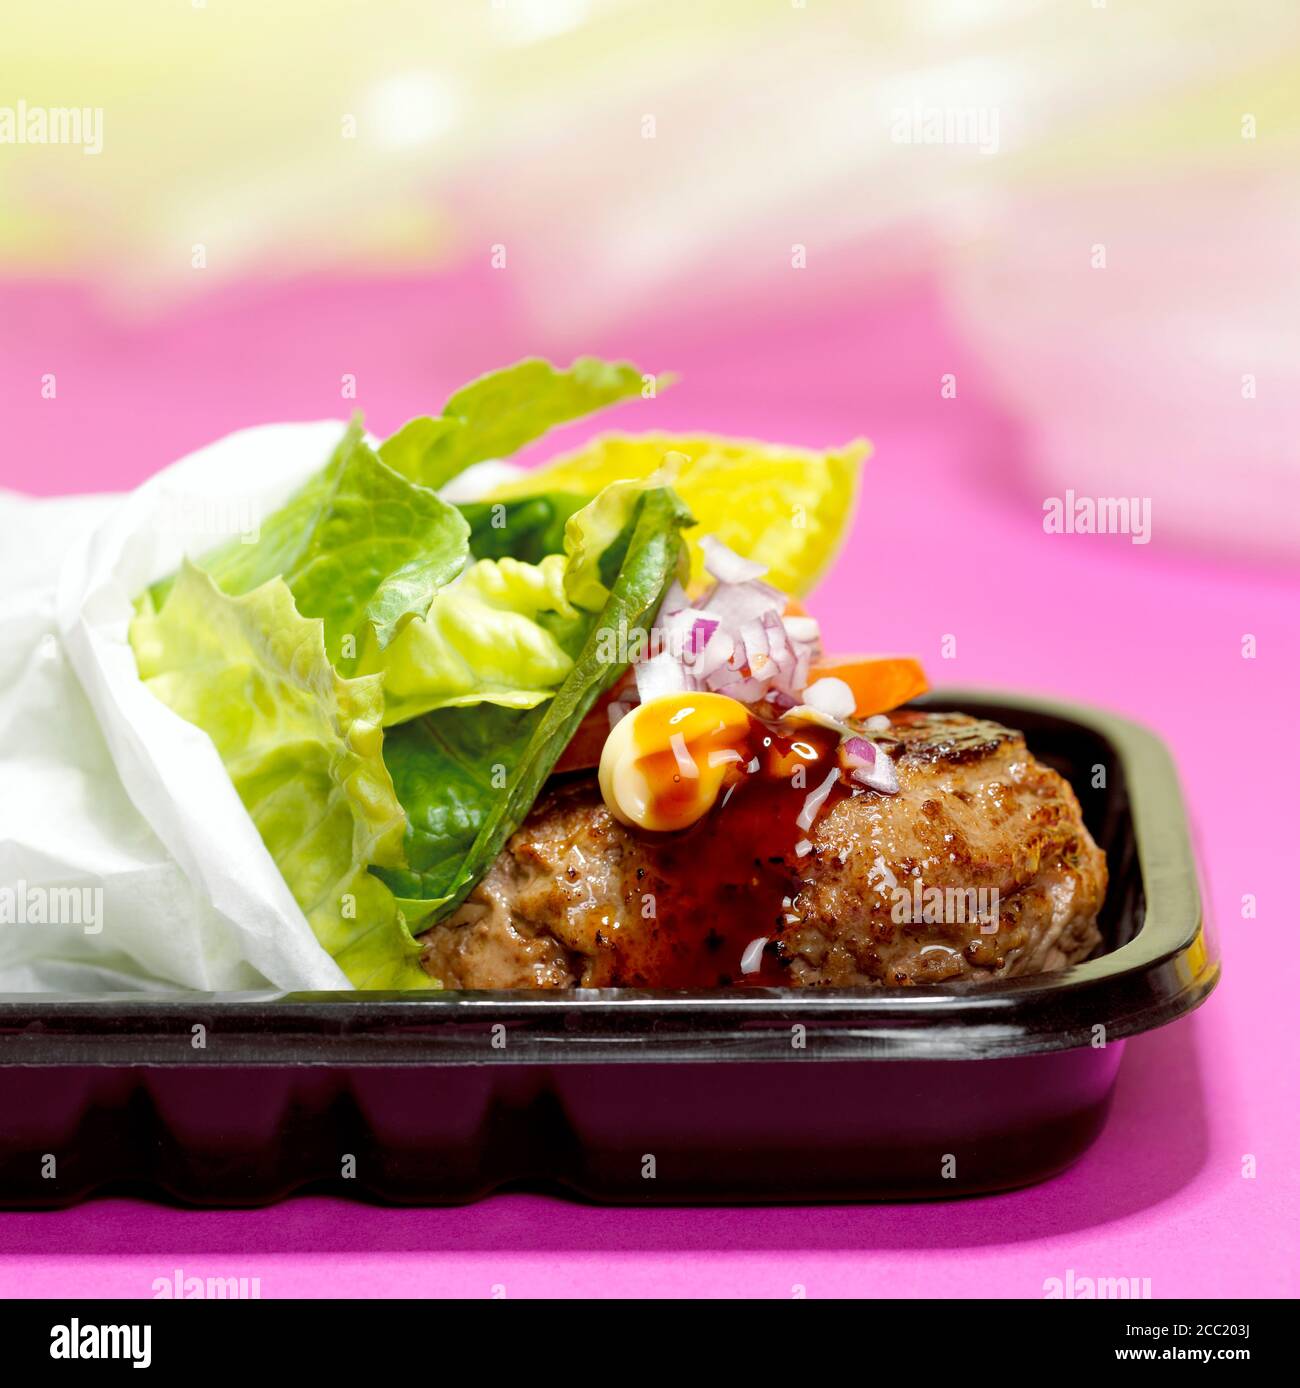 Teriyaki Burger, close-up Stock Photo